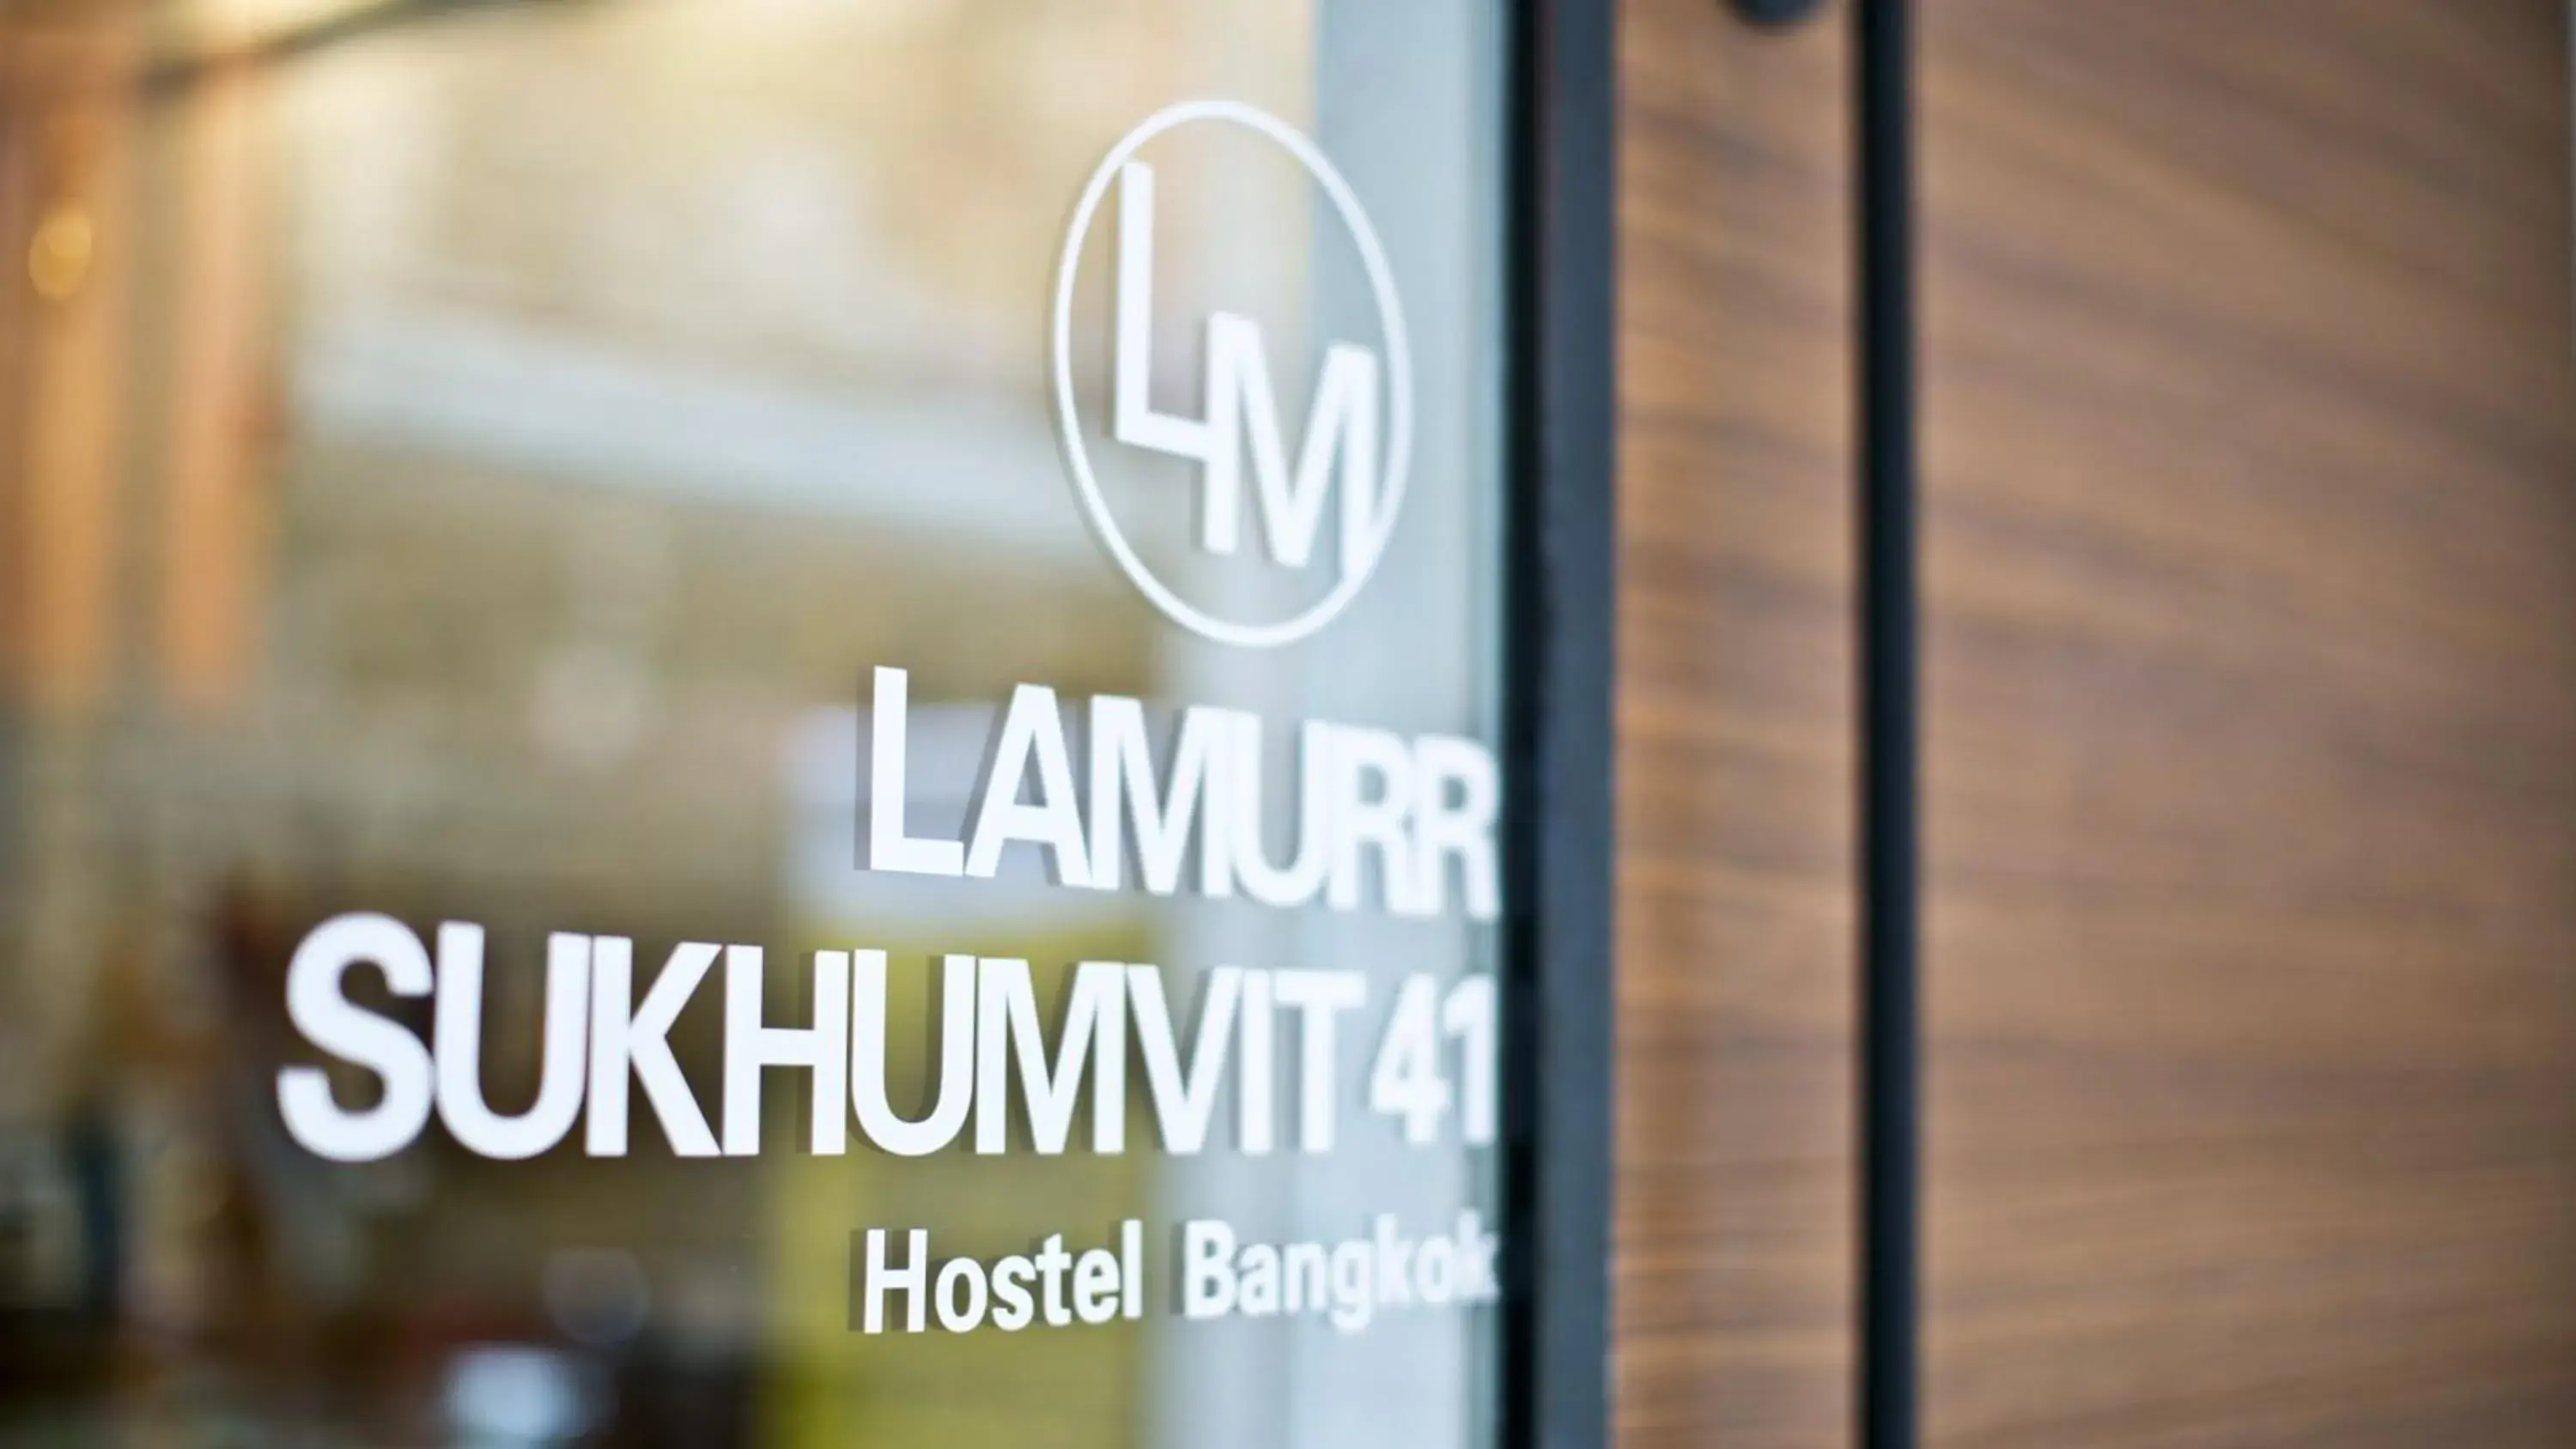 Property logo or sign in Lamurr Sukhumvit 41 Hostel